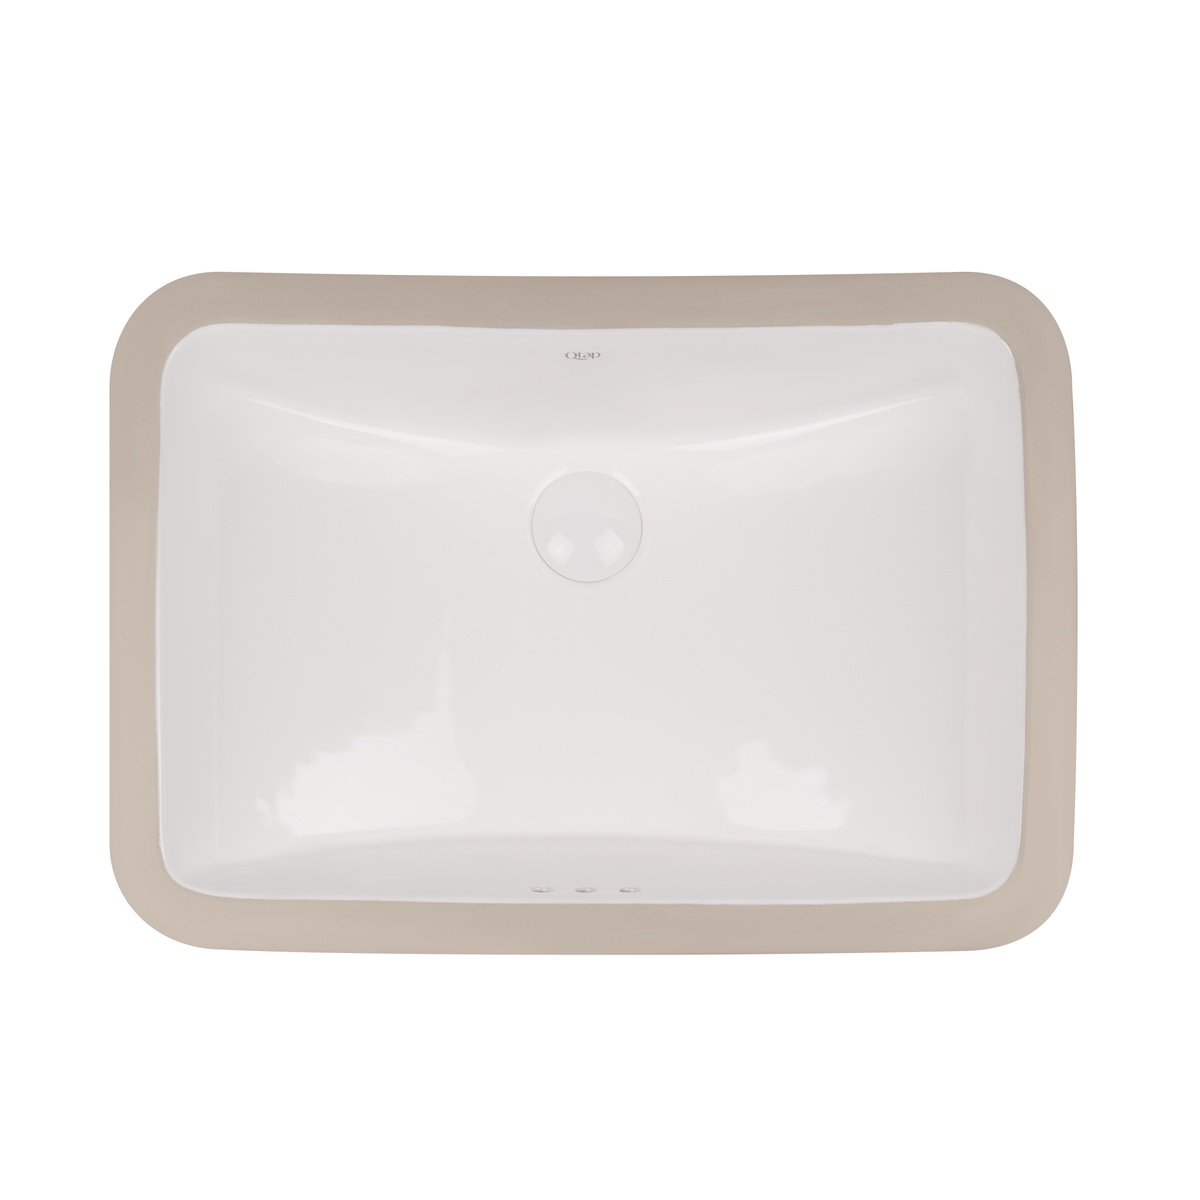 Умивальник врізний для ванної під стільницю 535мм x 370мм Q-TAP Stork білий прямокутна QT15116032W